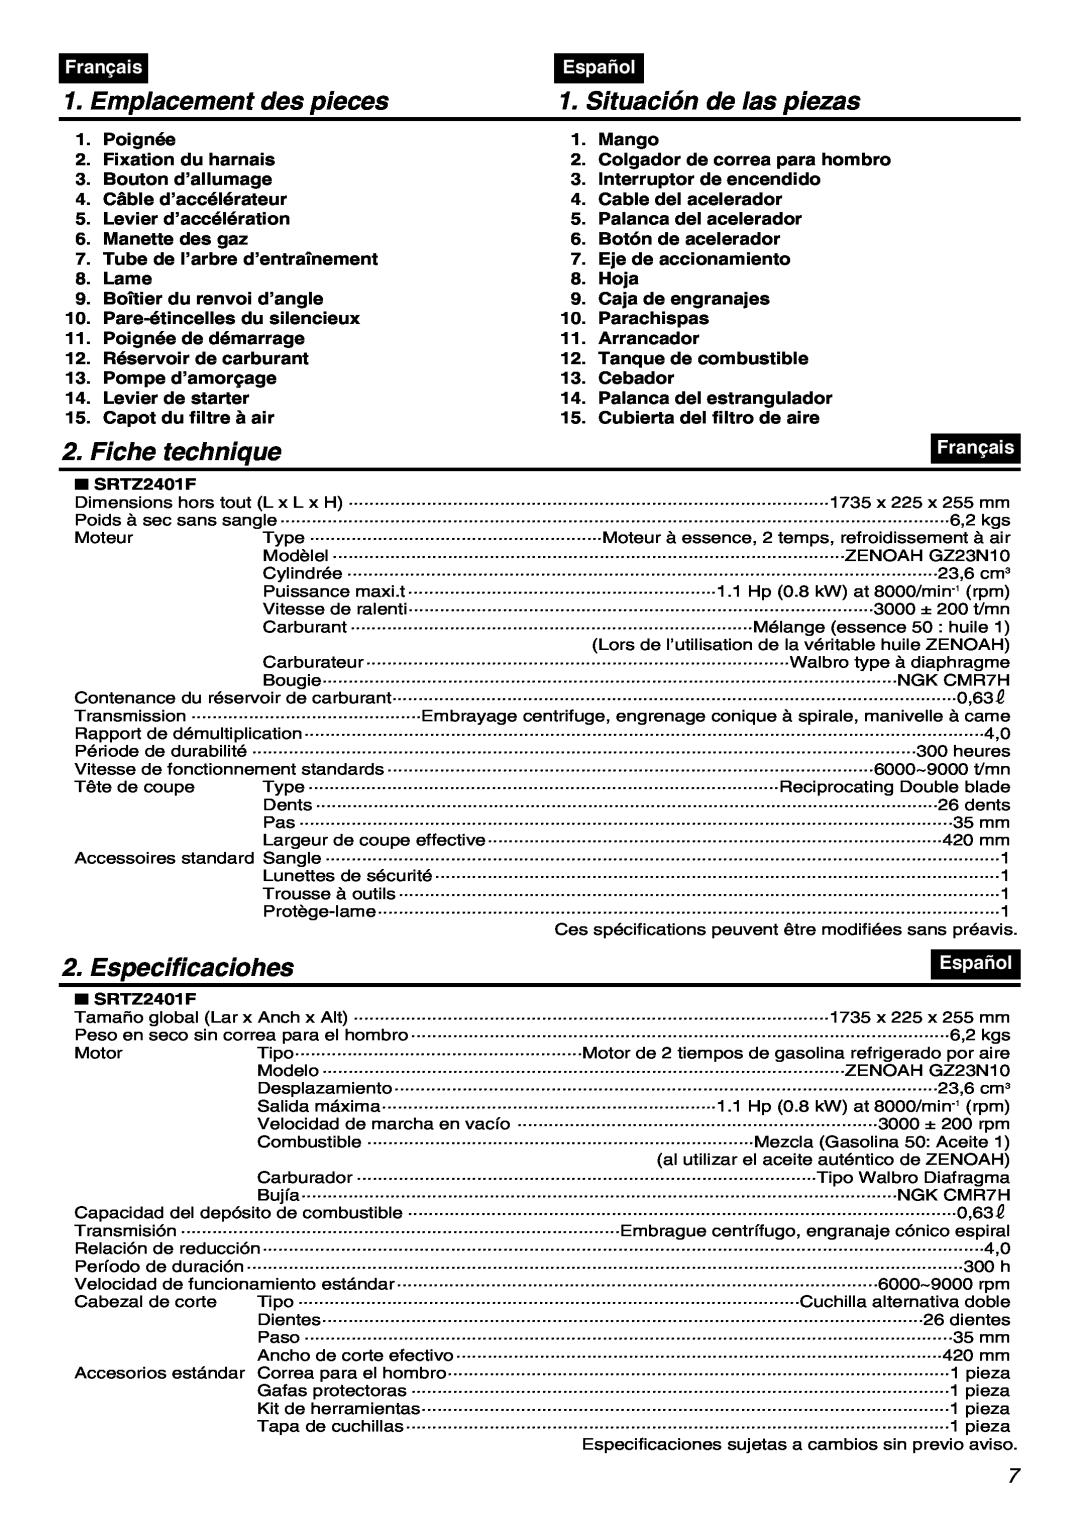 RedMax SRTZ2401F Emplacement des pieces, Situación de las piezas, Fiche technique, Especificaciohes, Français, Español 